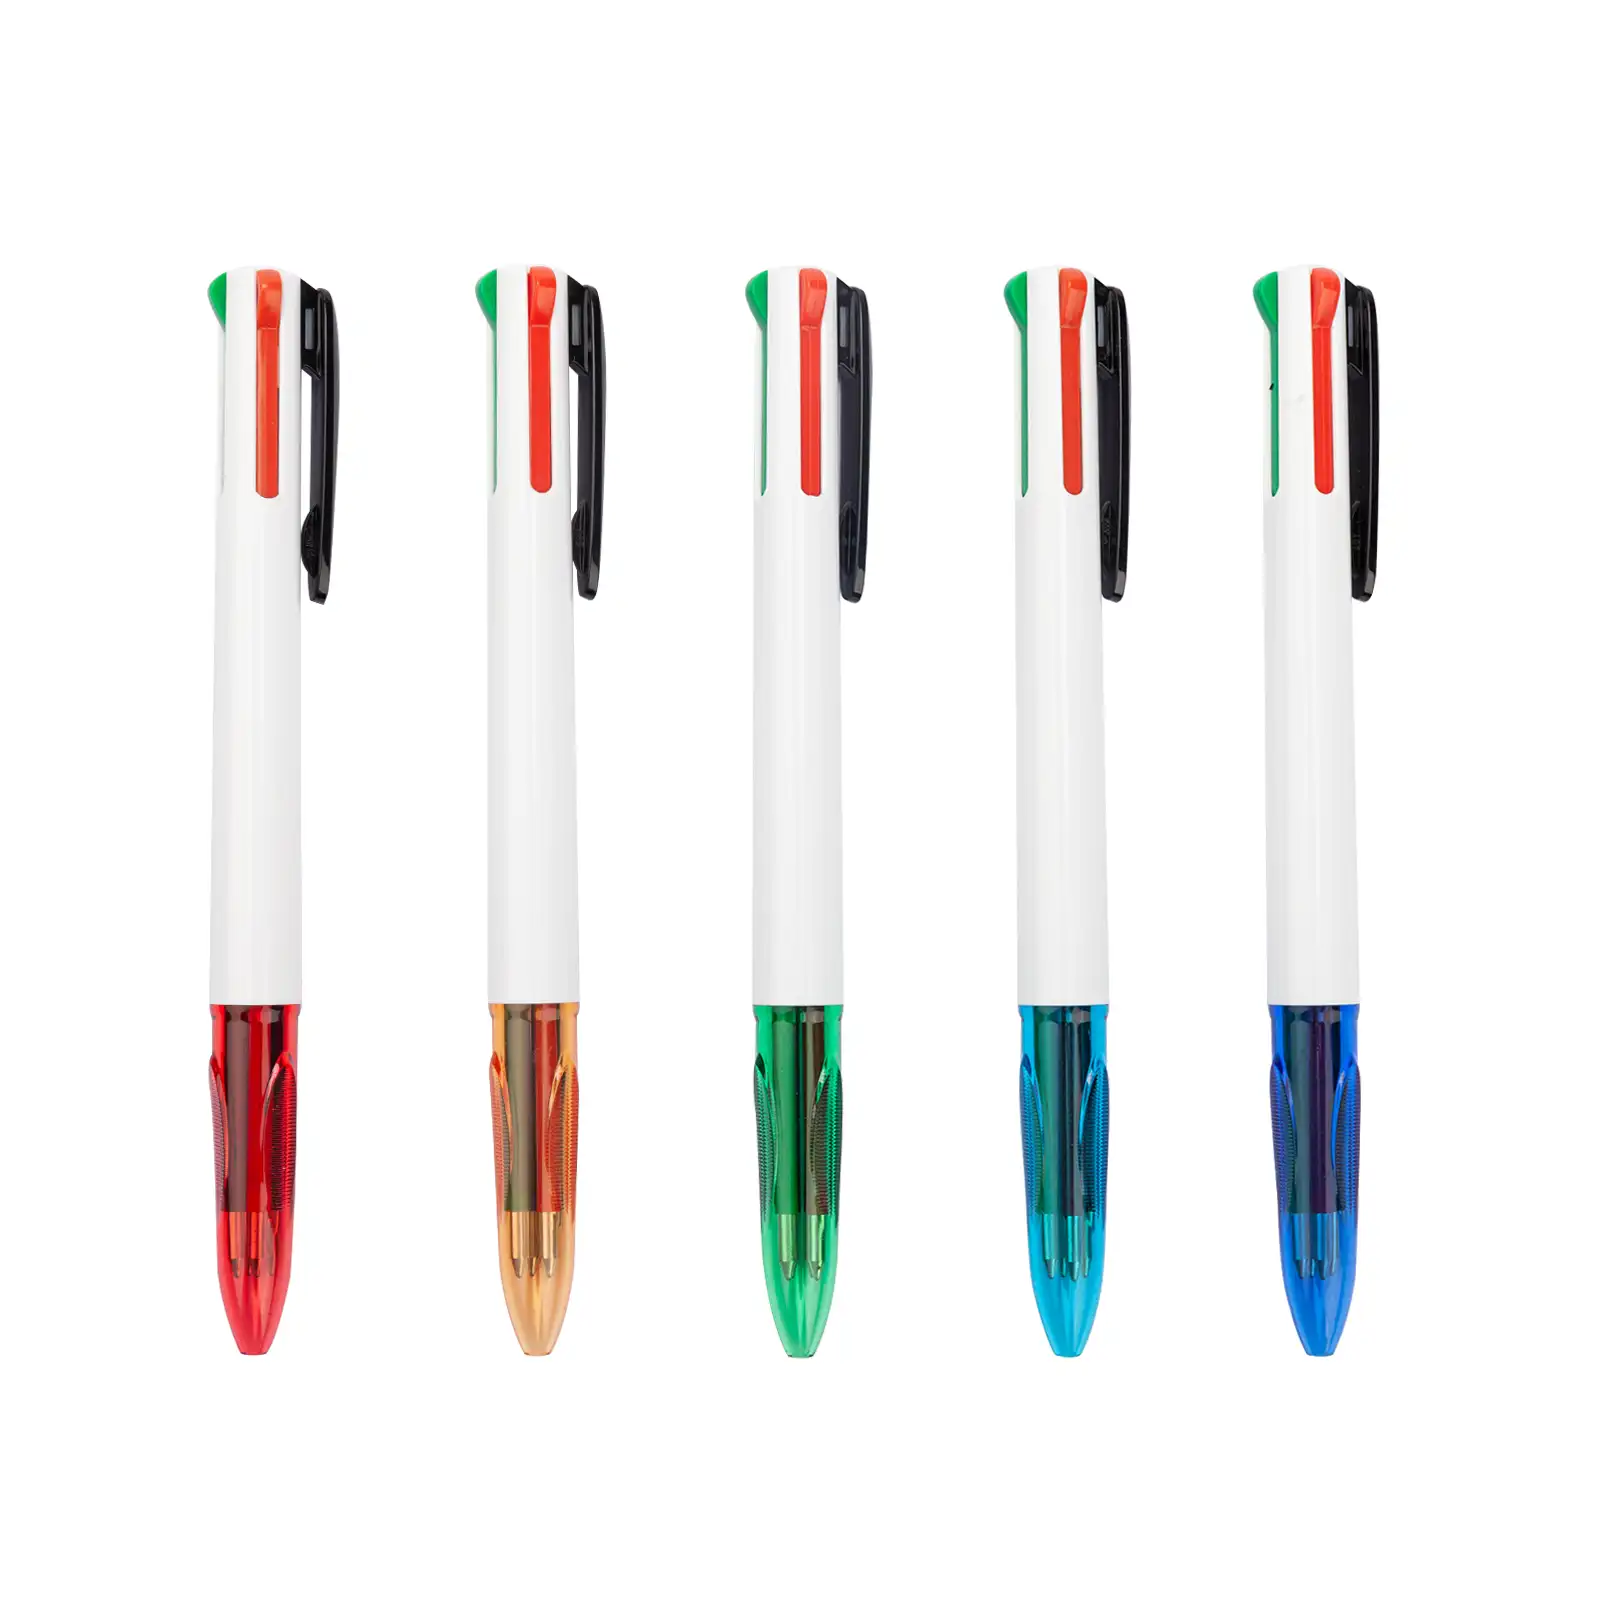 Aihao Hot Selling Groothandel 4 In 1 Balpen Multicolor Pen Vier Kleuren Pen